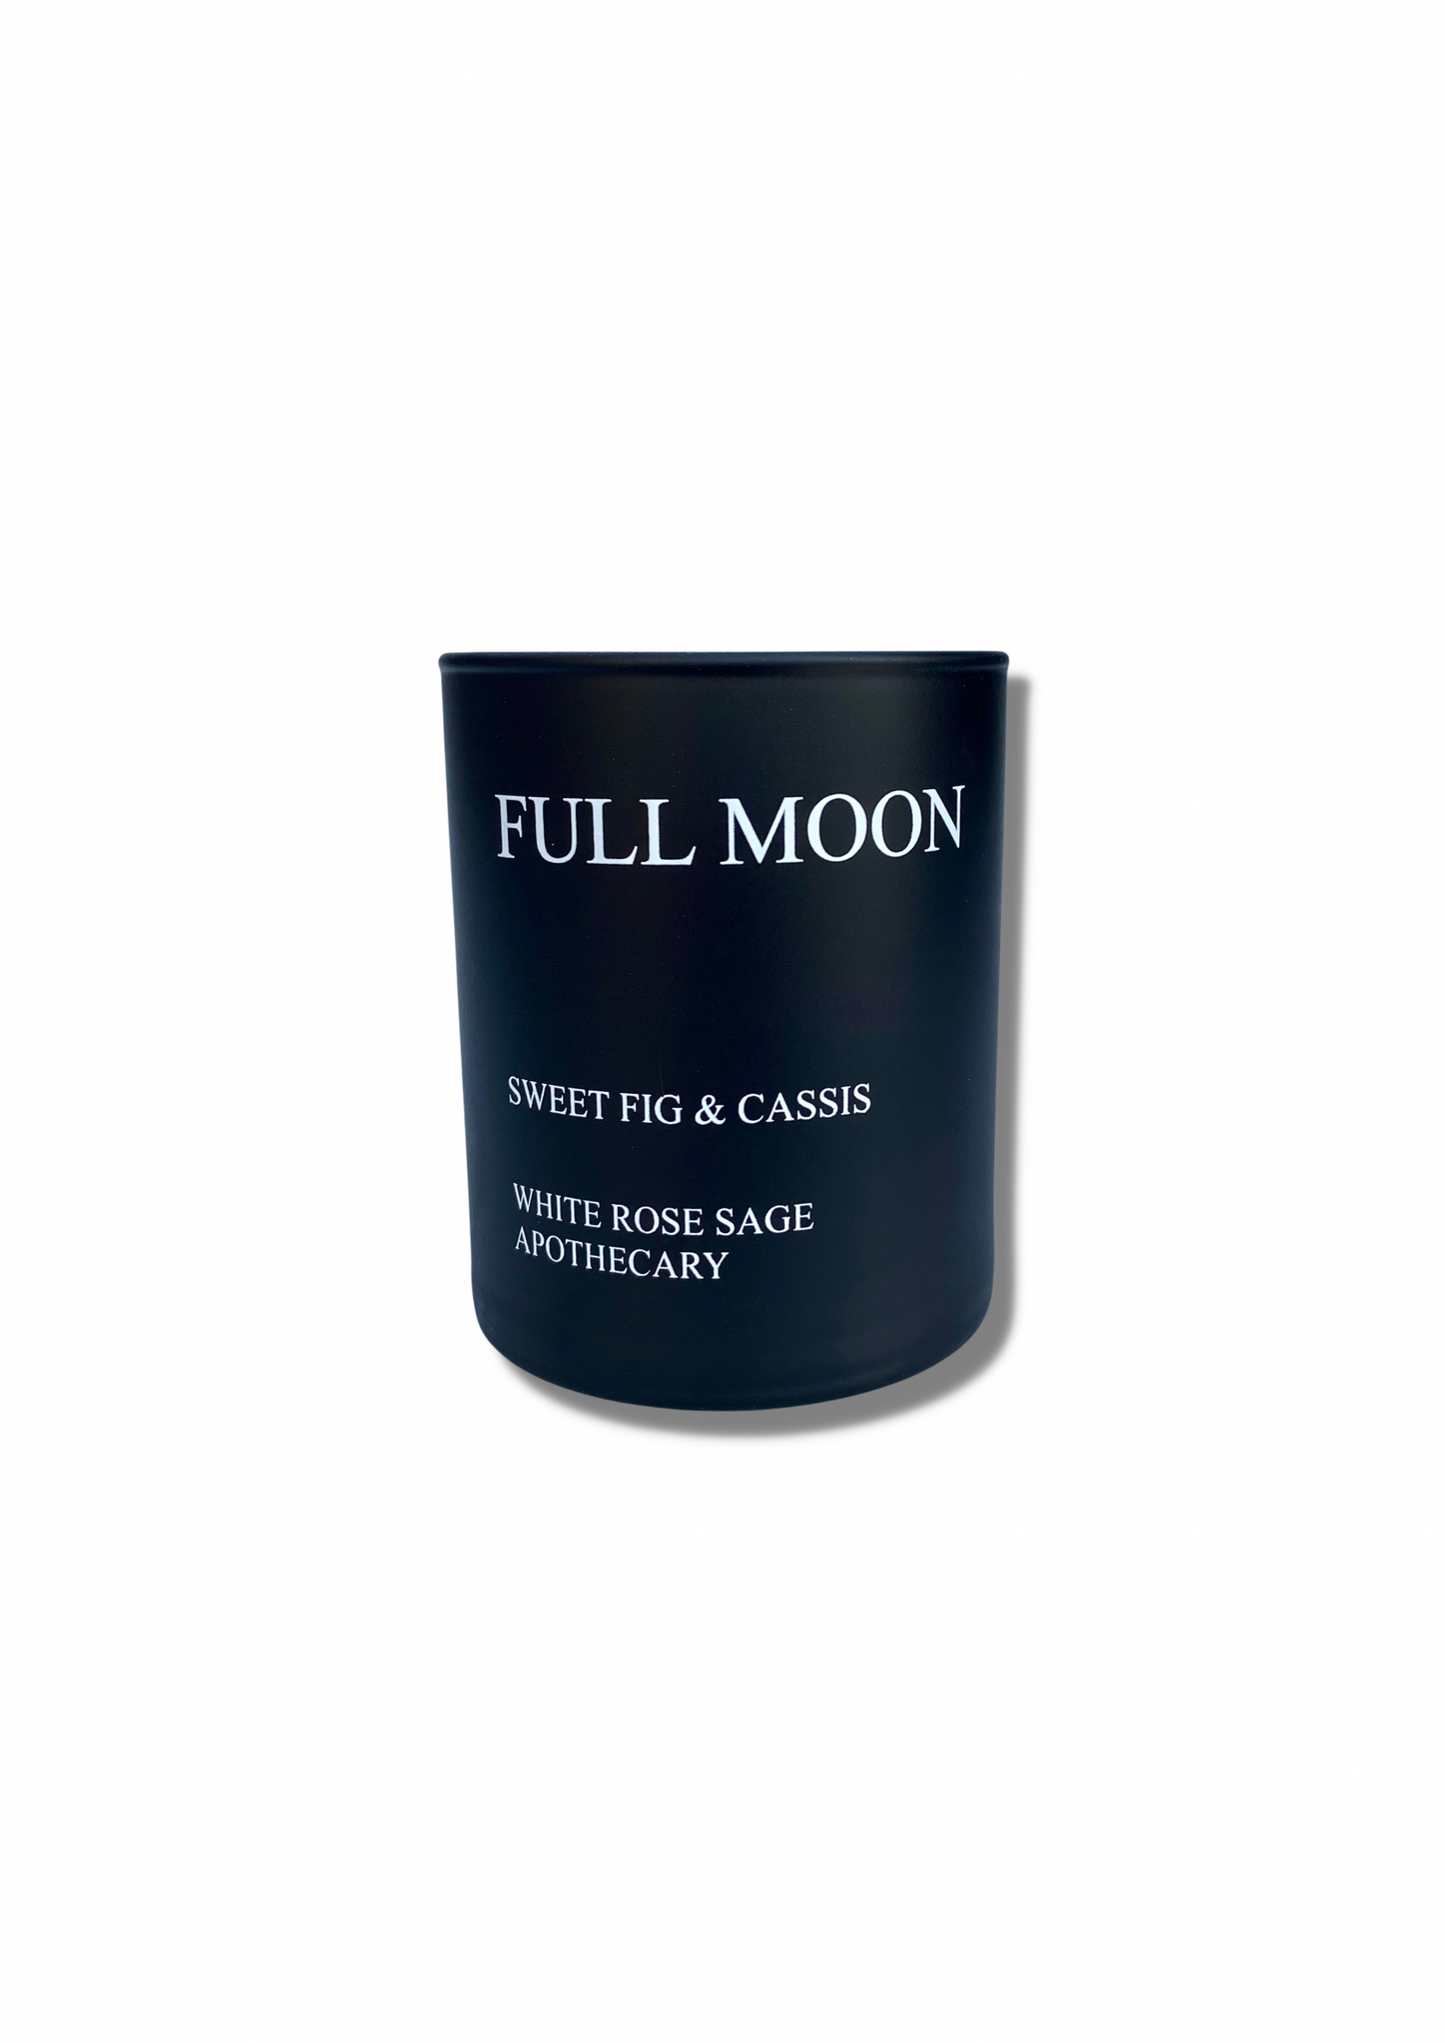 Full Moon (No box)